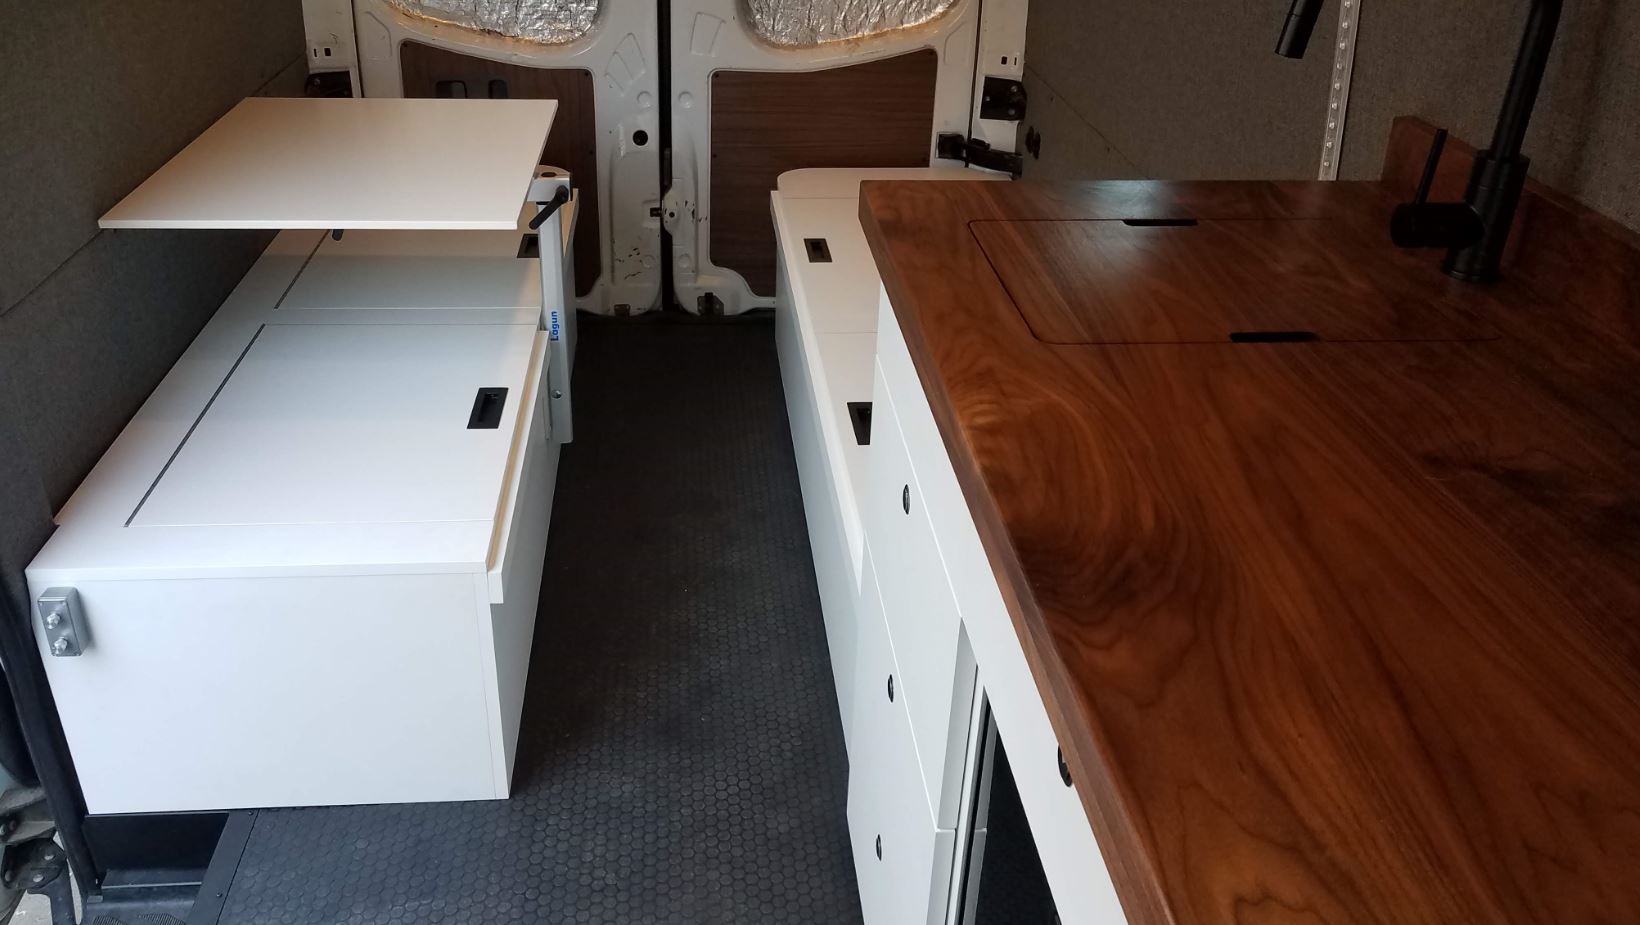 van cabinets and countertop